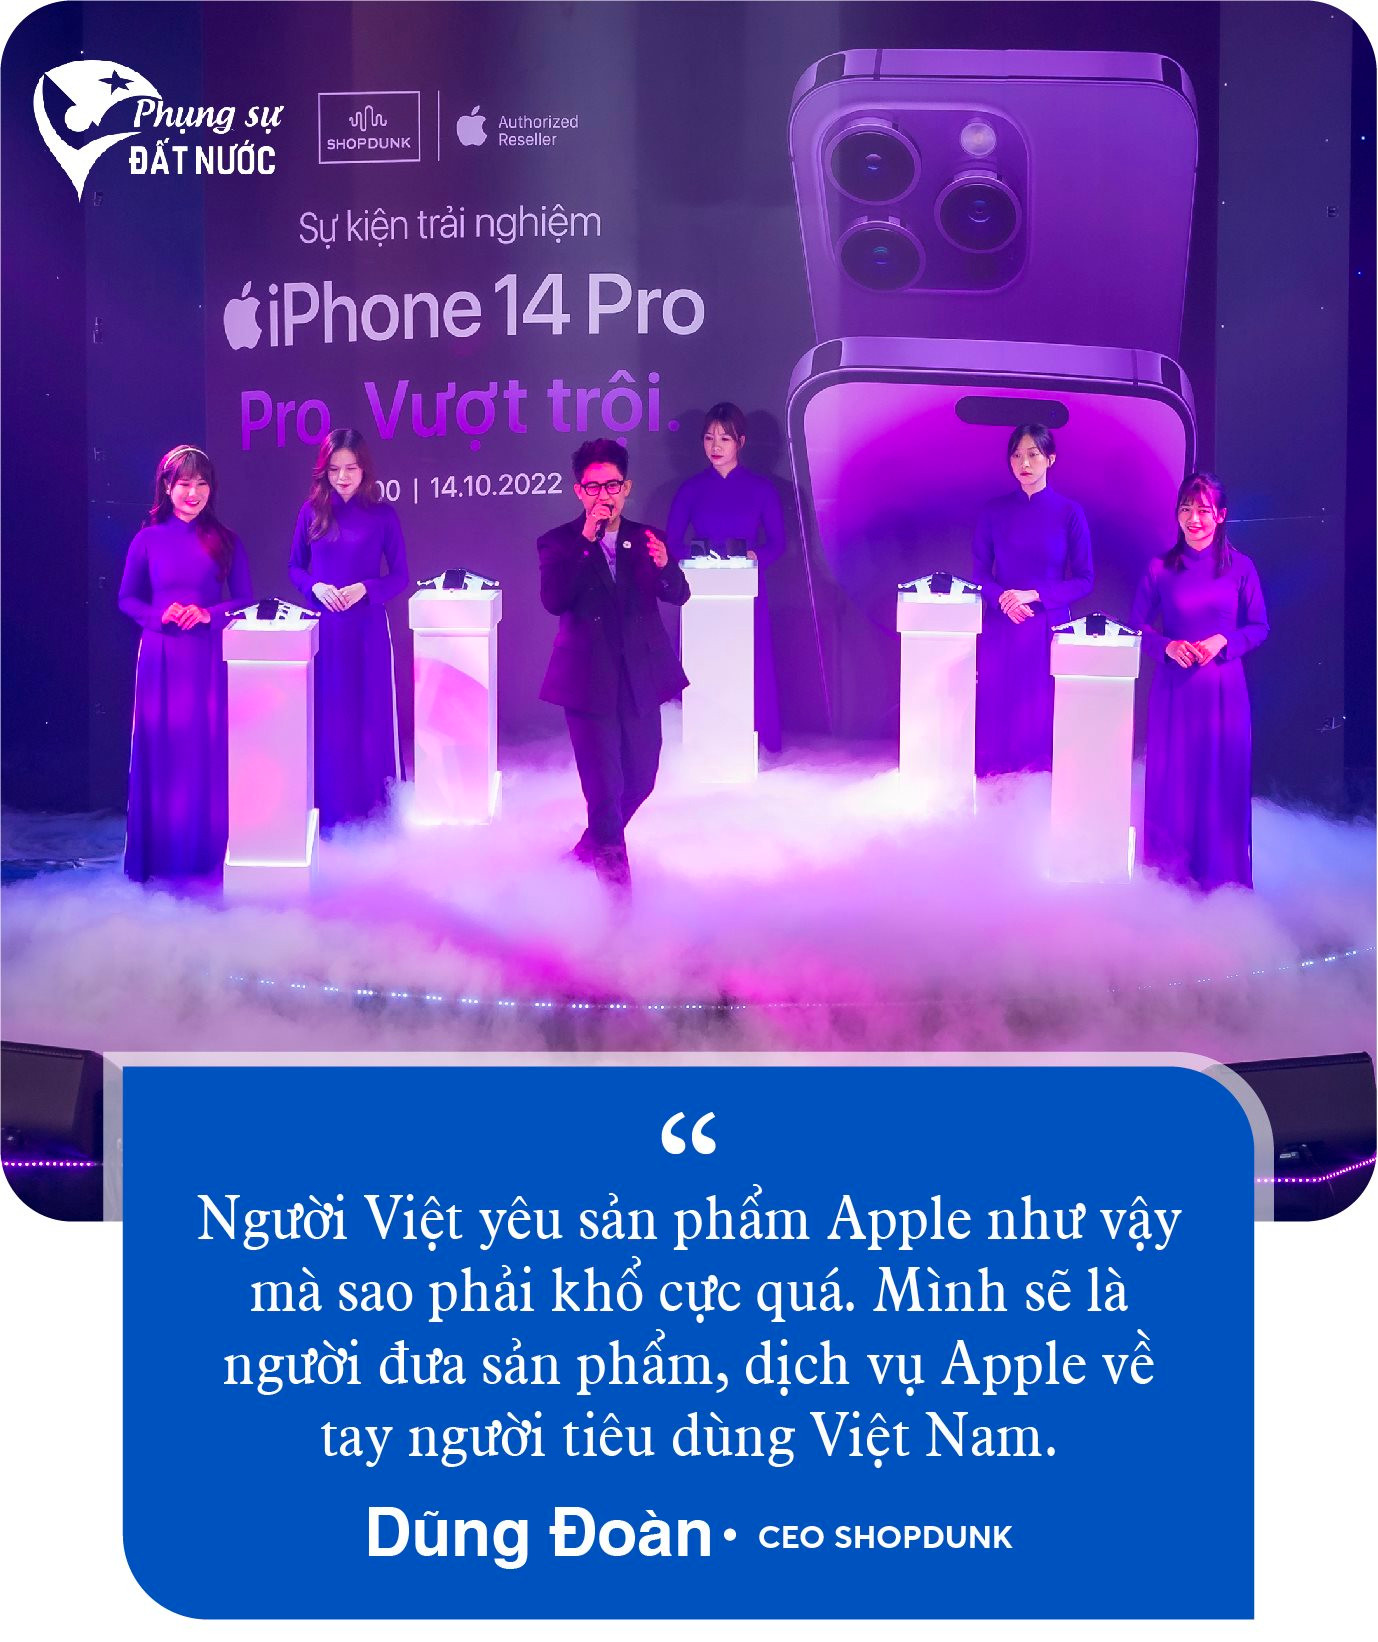 CEO ShopDunk Dũng Đoàn: Người Việt yêu Apple nhưng chưa được hồi đáp xứng đáng - Ảnh 2.